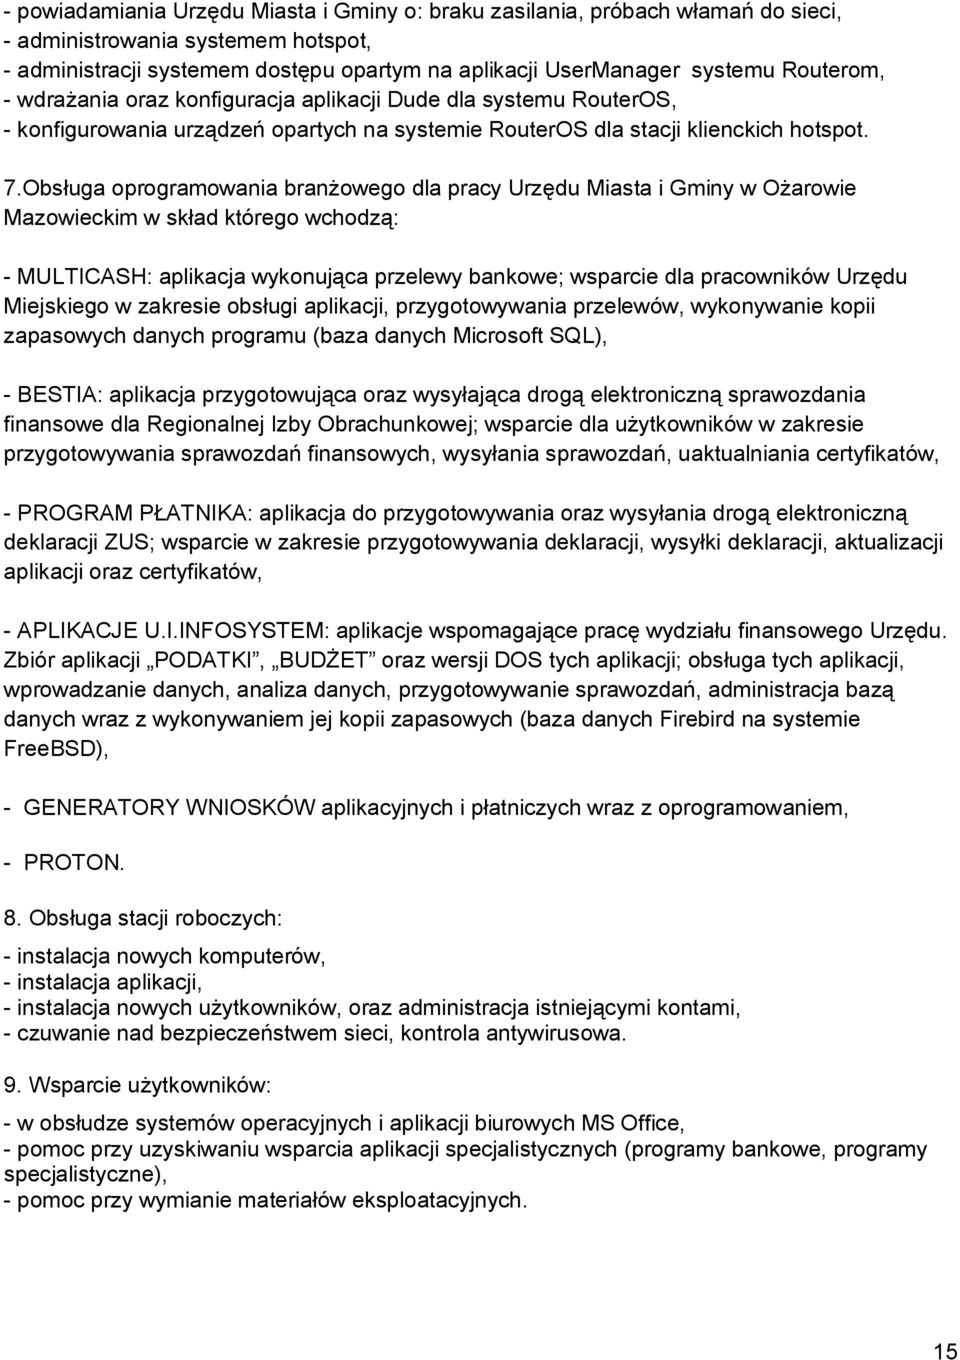 Obsługa oprogramowania branżowego dla pracy Urzędu Miasta i Gminy w Ożarowie Mazowieckim w skład którego wchodzą: - MULTICASH: aplikacja wykonująca przelewy bankowe; wsparcie dla pracowników Urzędu